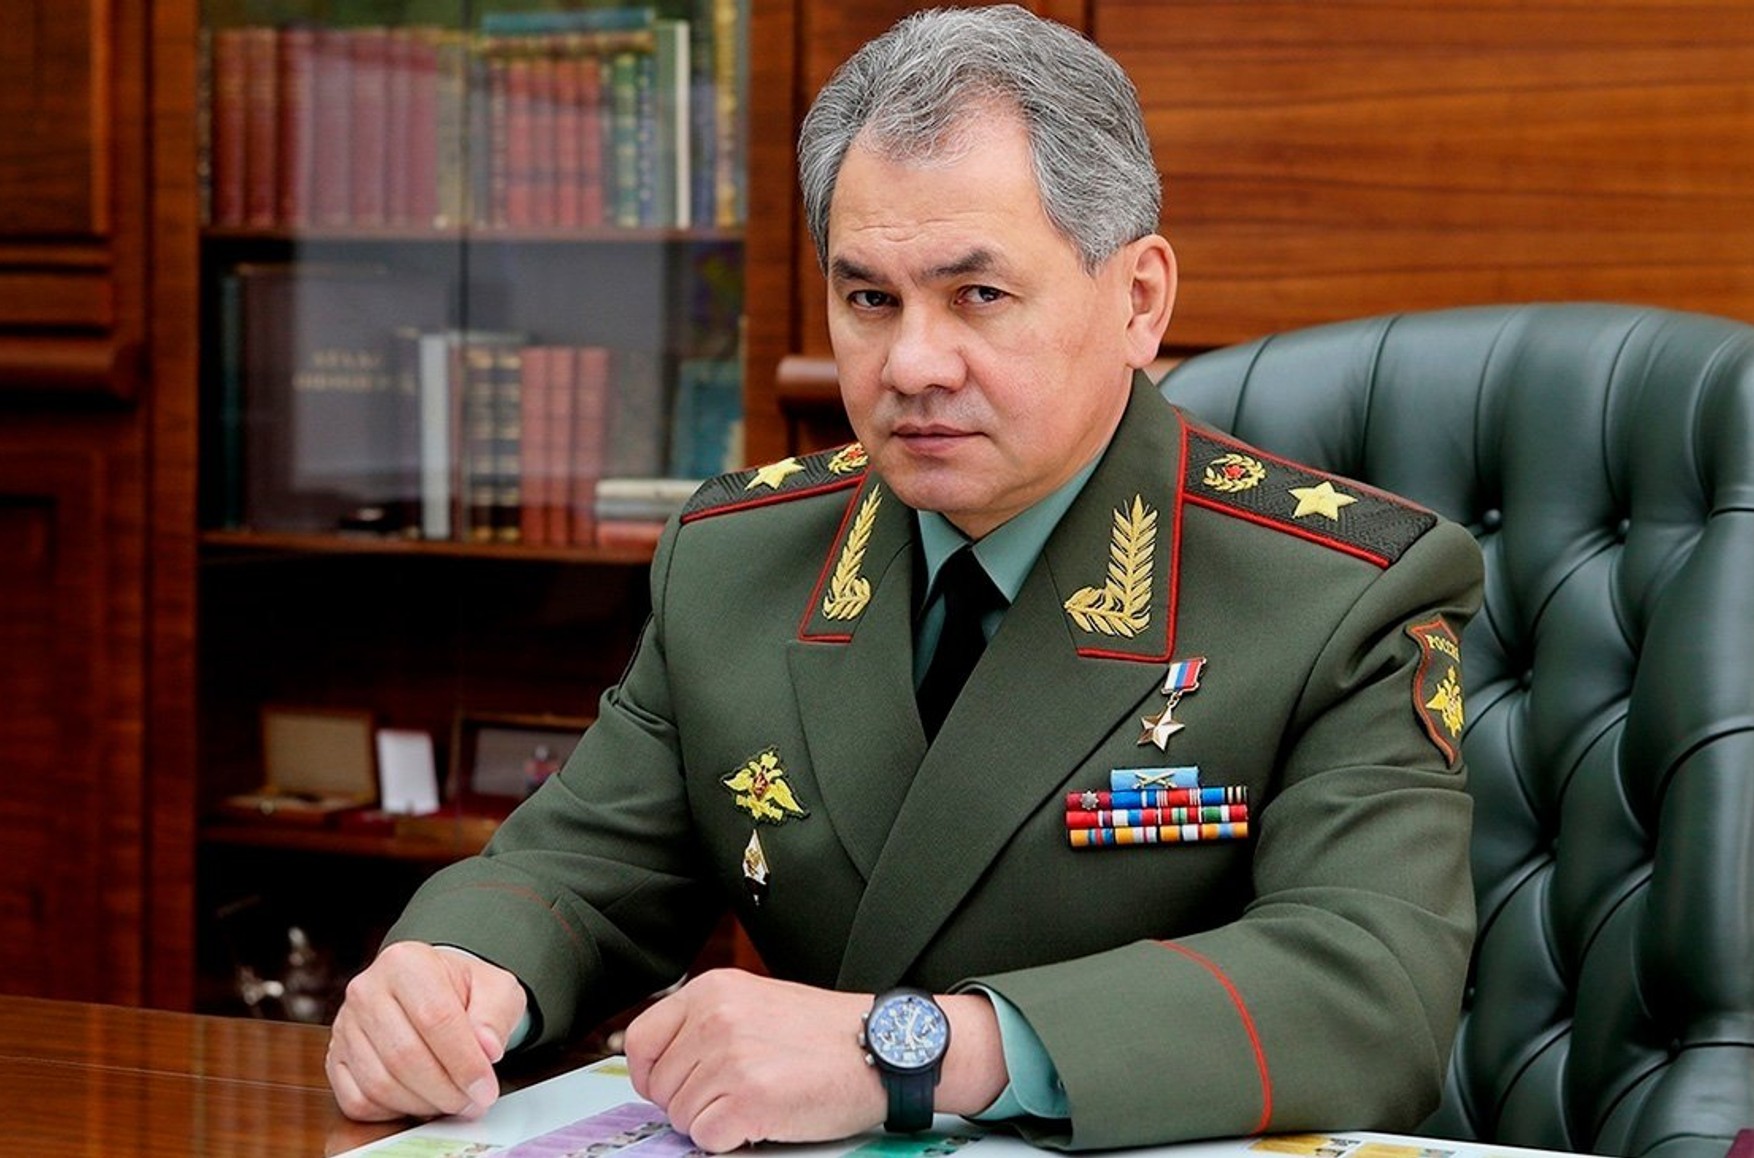 Міністр оборони Шойгу, який володіє власністю на мільярди рублів, назвав головною небезпекою для країни «внутрішню загрозу»